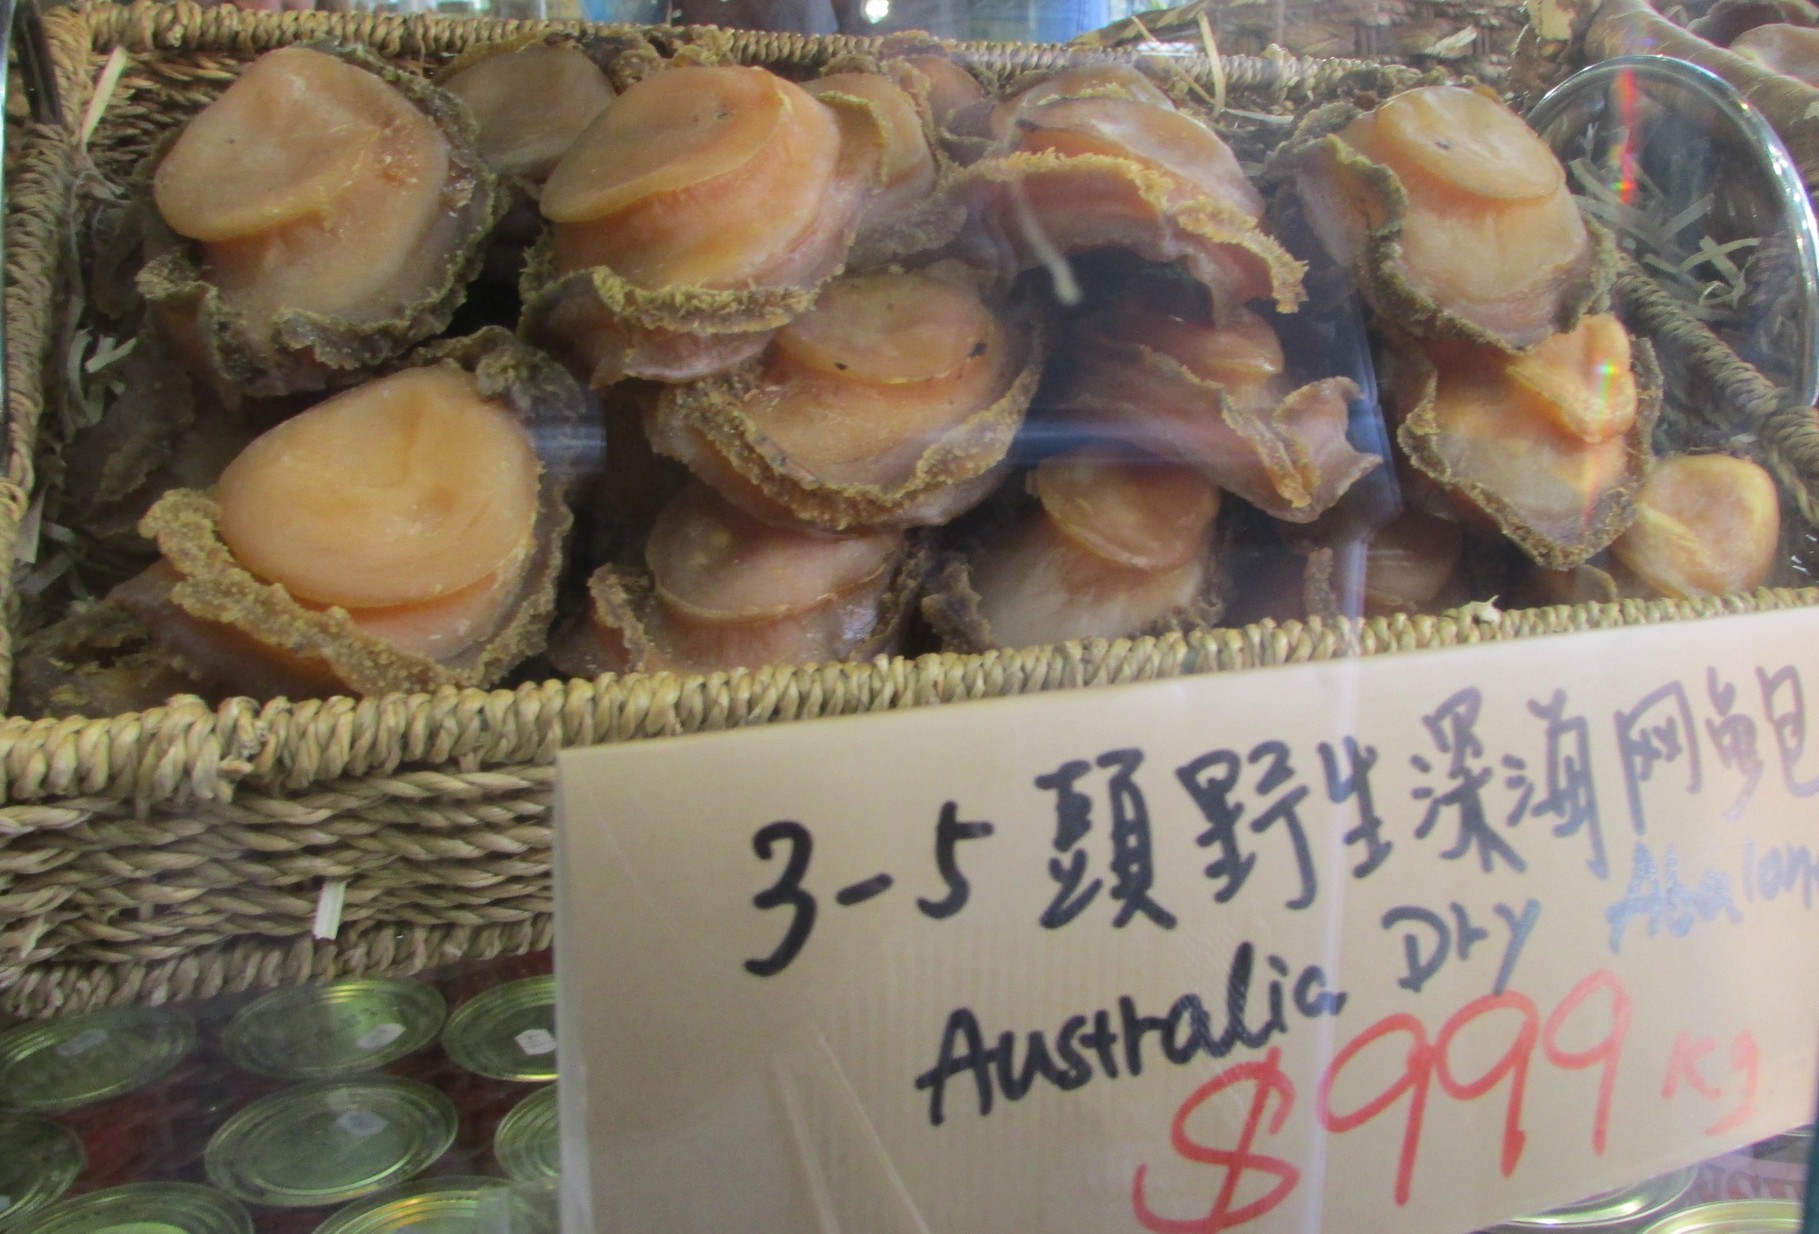 Abalone est le nom anglais de l'ormeau, un coquillage vendu à prix d'or car recherché par les gourmets asiatiques (et bretons).